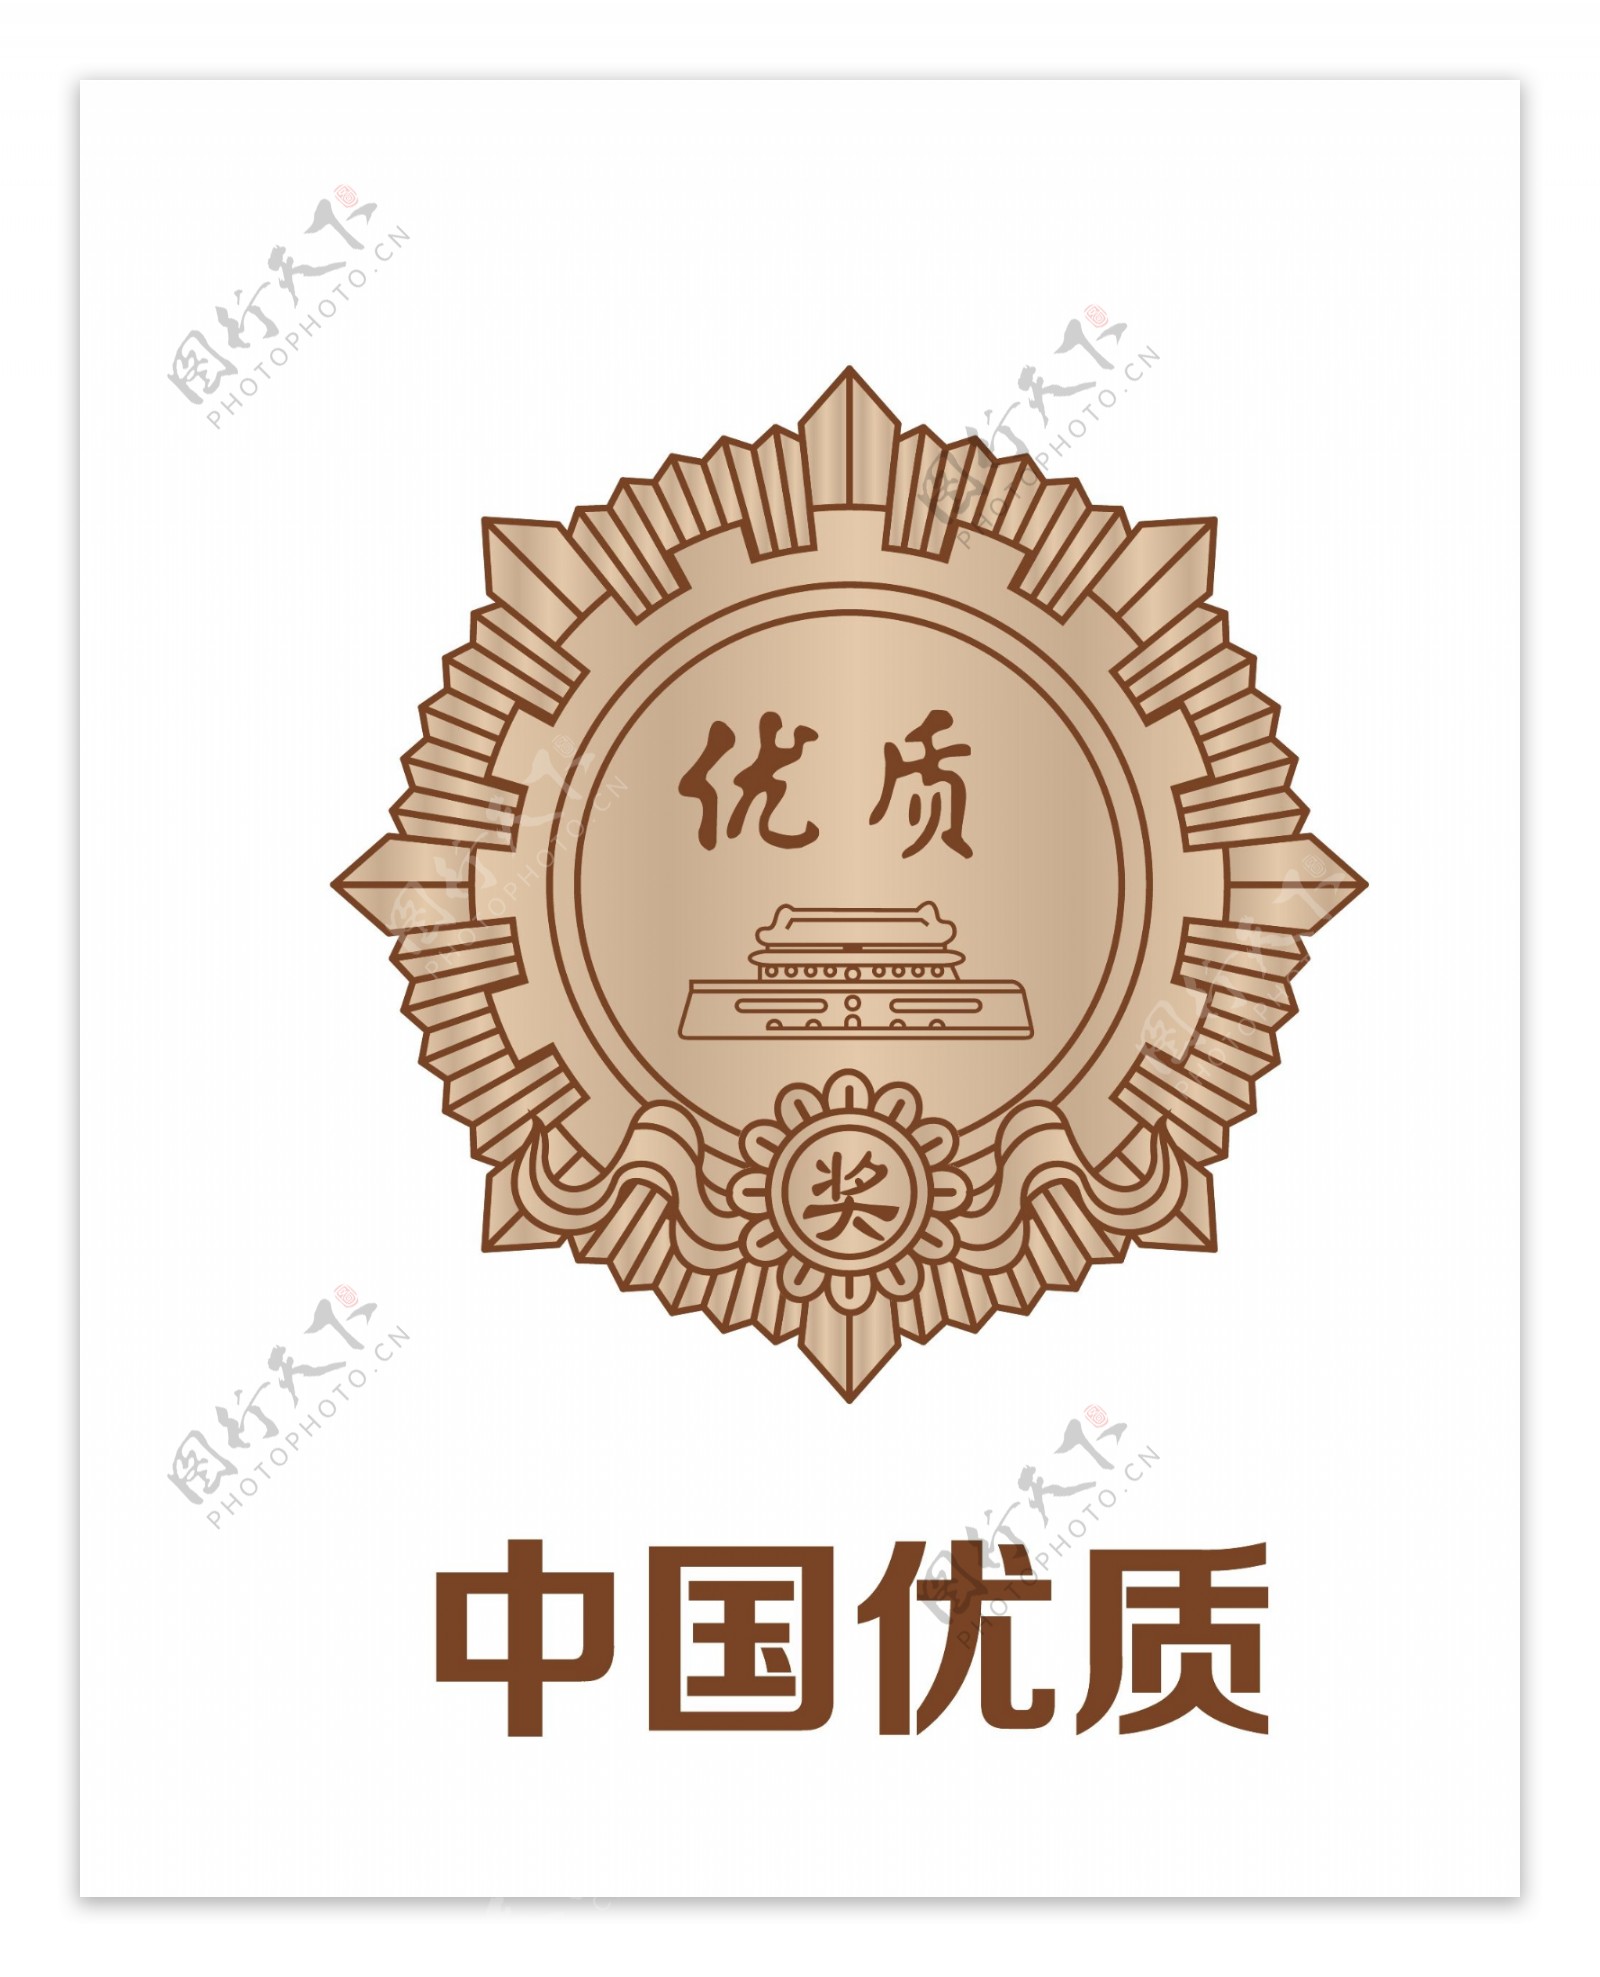 中国优质奖章logo图片